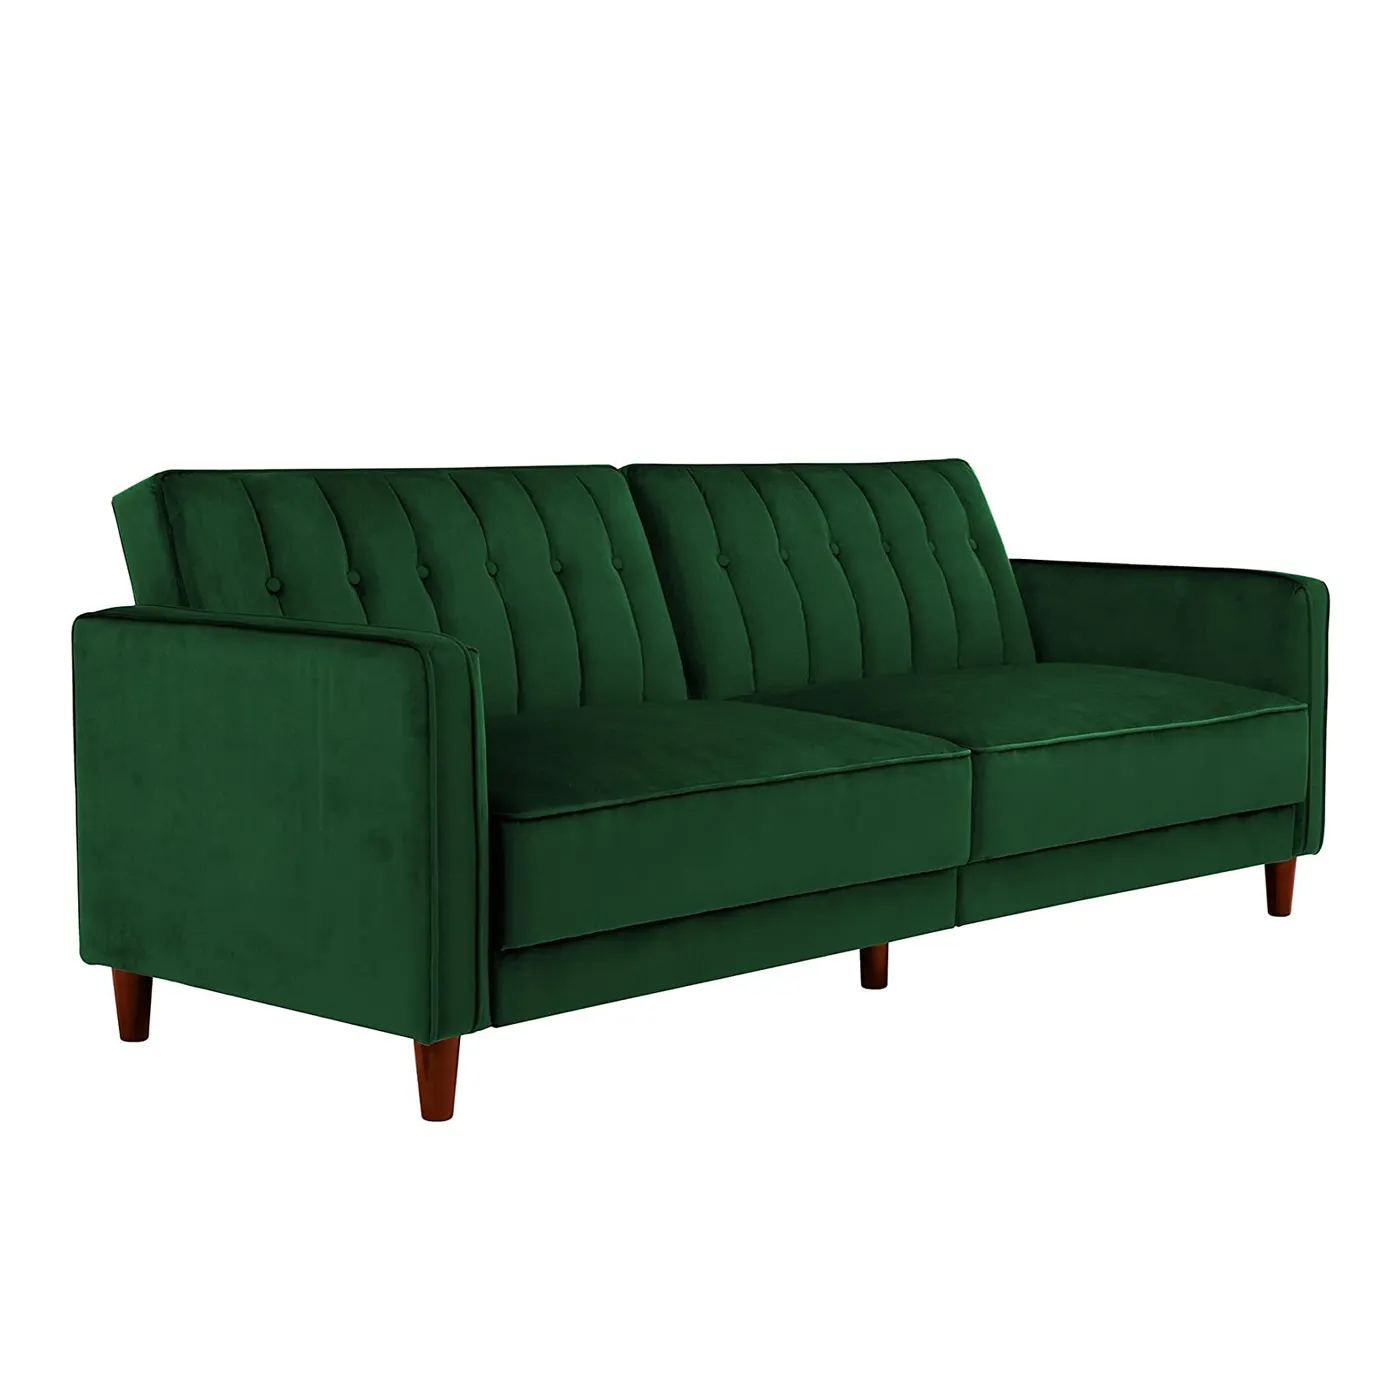 สีเขียวกำมะหยี่วันเตียงโซฟาเตียงโซฟาที่มีเบาะผ้าขาพลาสติกไม้ราคาถูกโซฟา